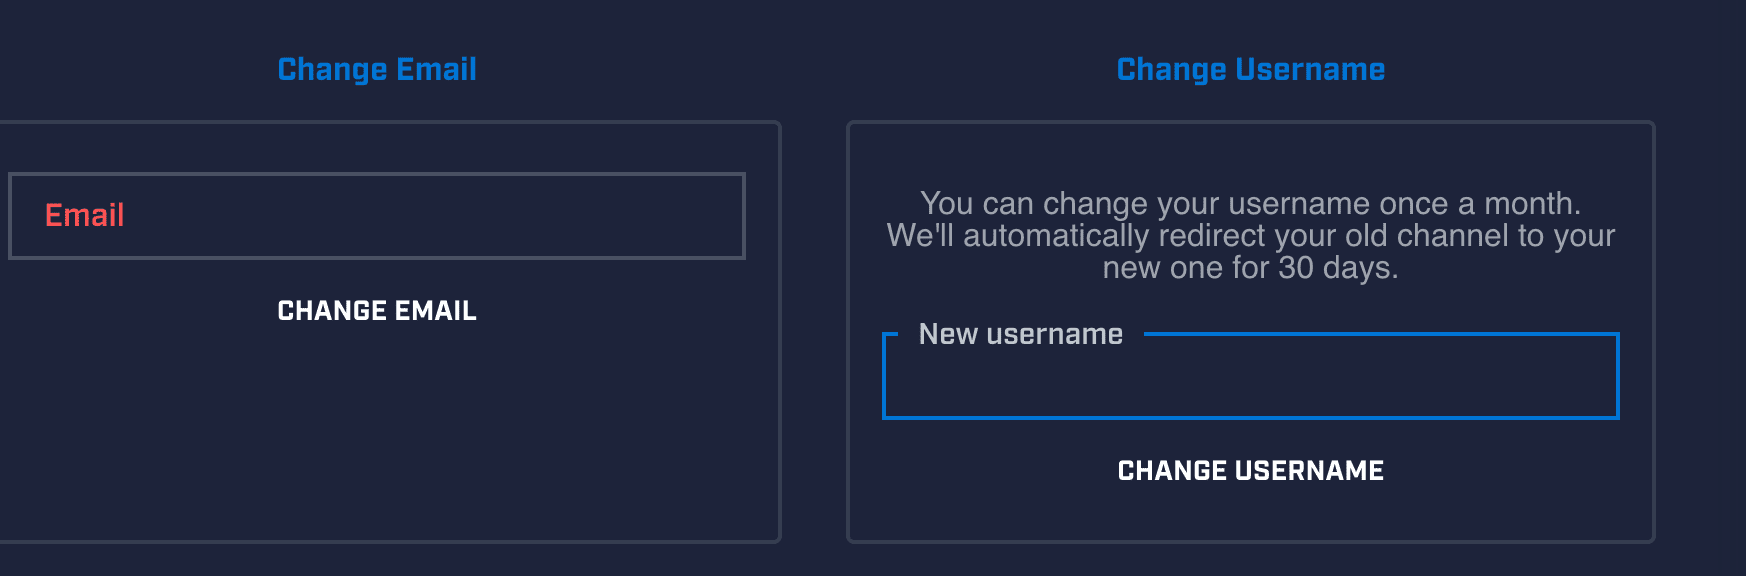 Возможность изменить имя пользователя отображается в синем прямоугольнике.